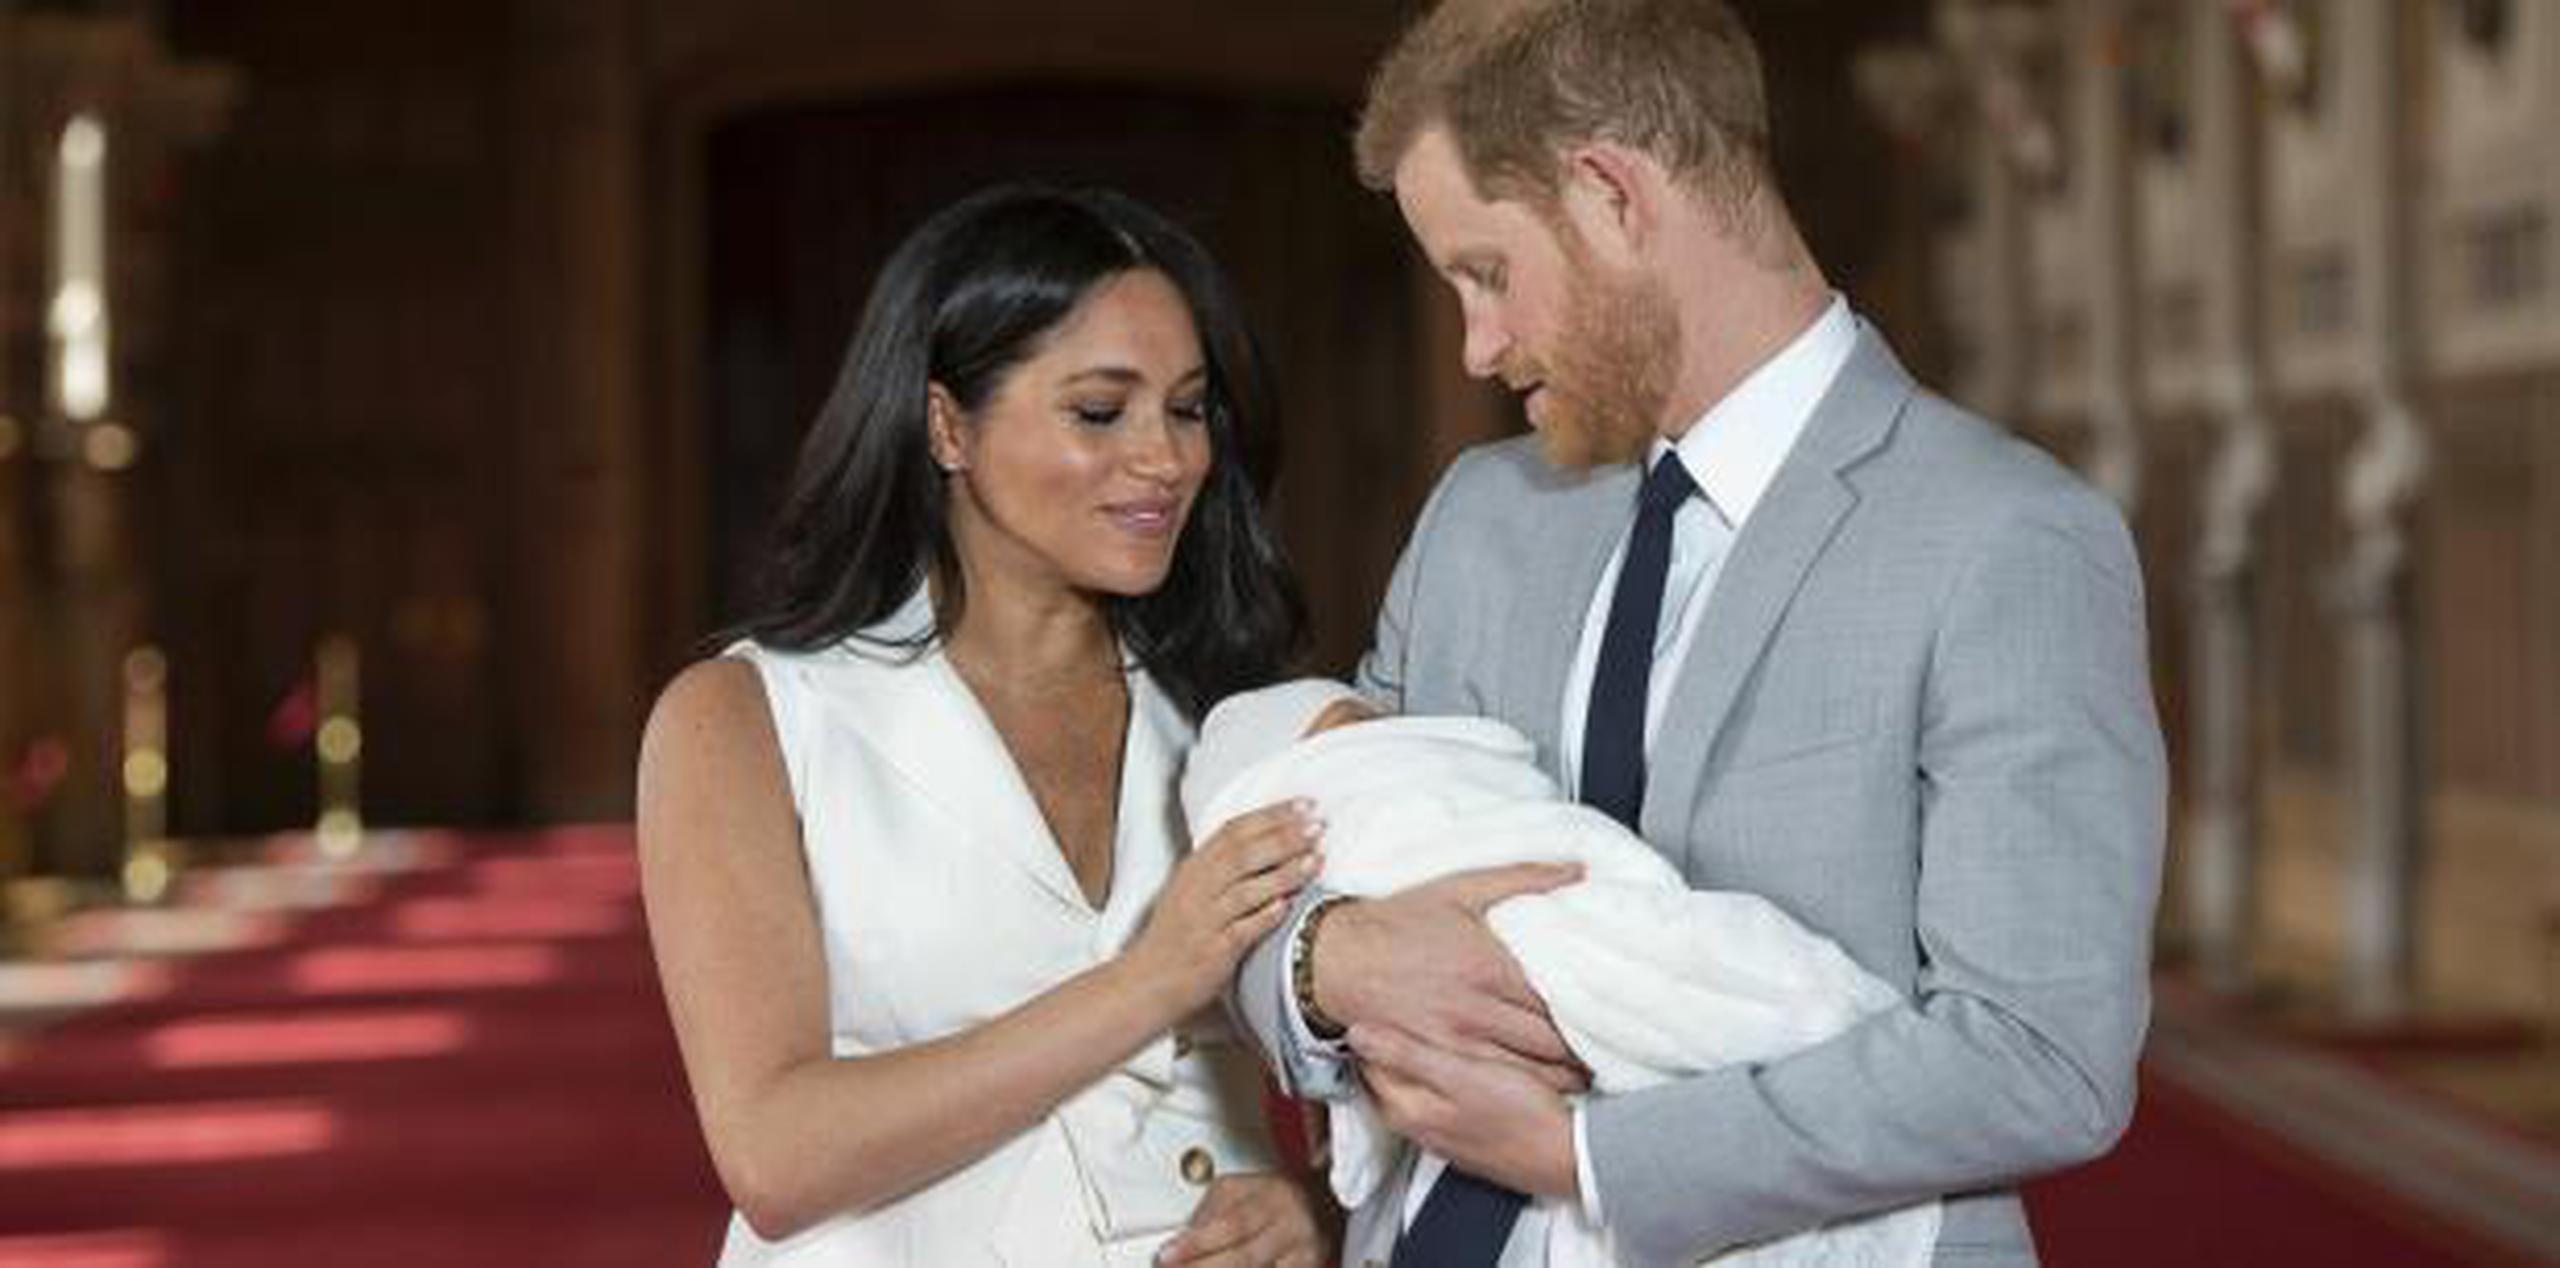 Markle, de tez negra, y el príncipe presentaron ayer a su hijo nacido el martes, y revelaron que se llamaría Archie Harrison Mountbatten-Windsor. (archivo)
